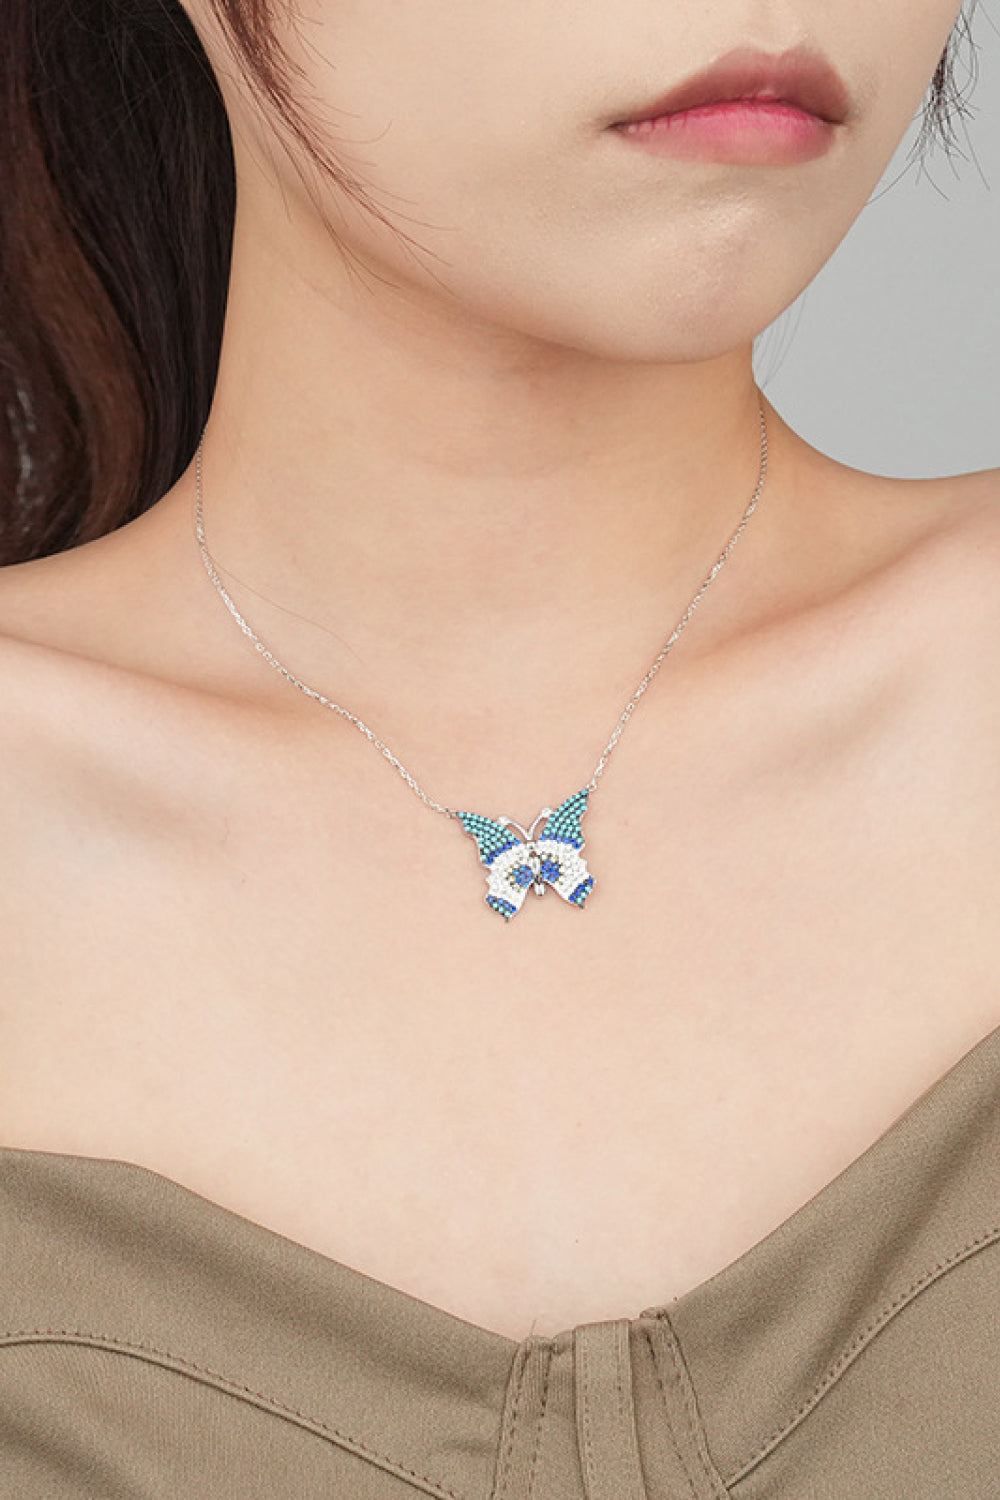 Women’s Butterfly Pendant Zircon Necklace